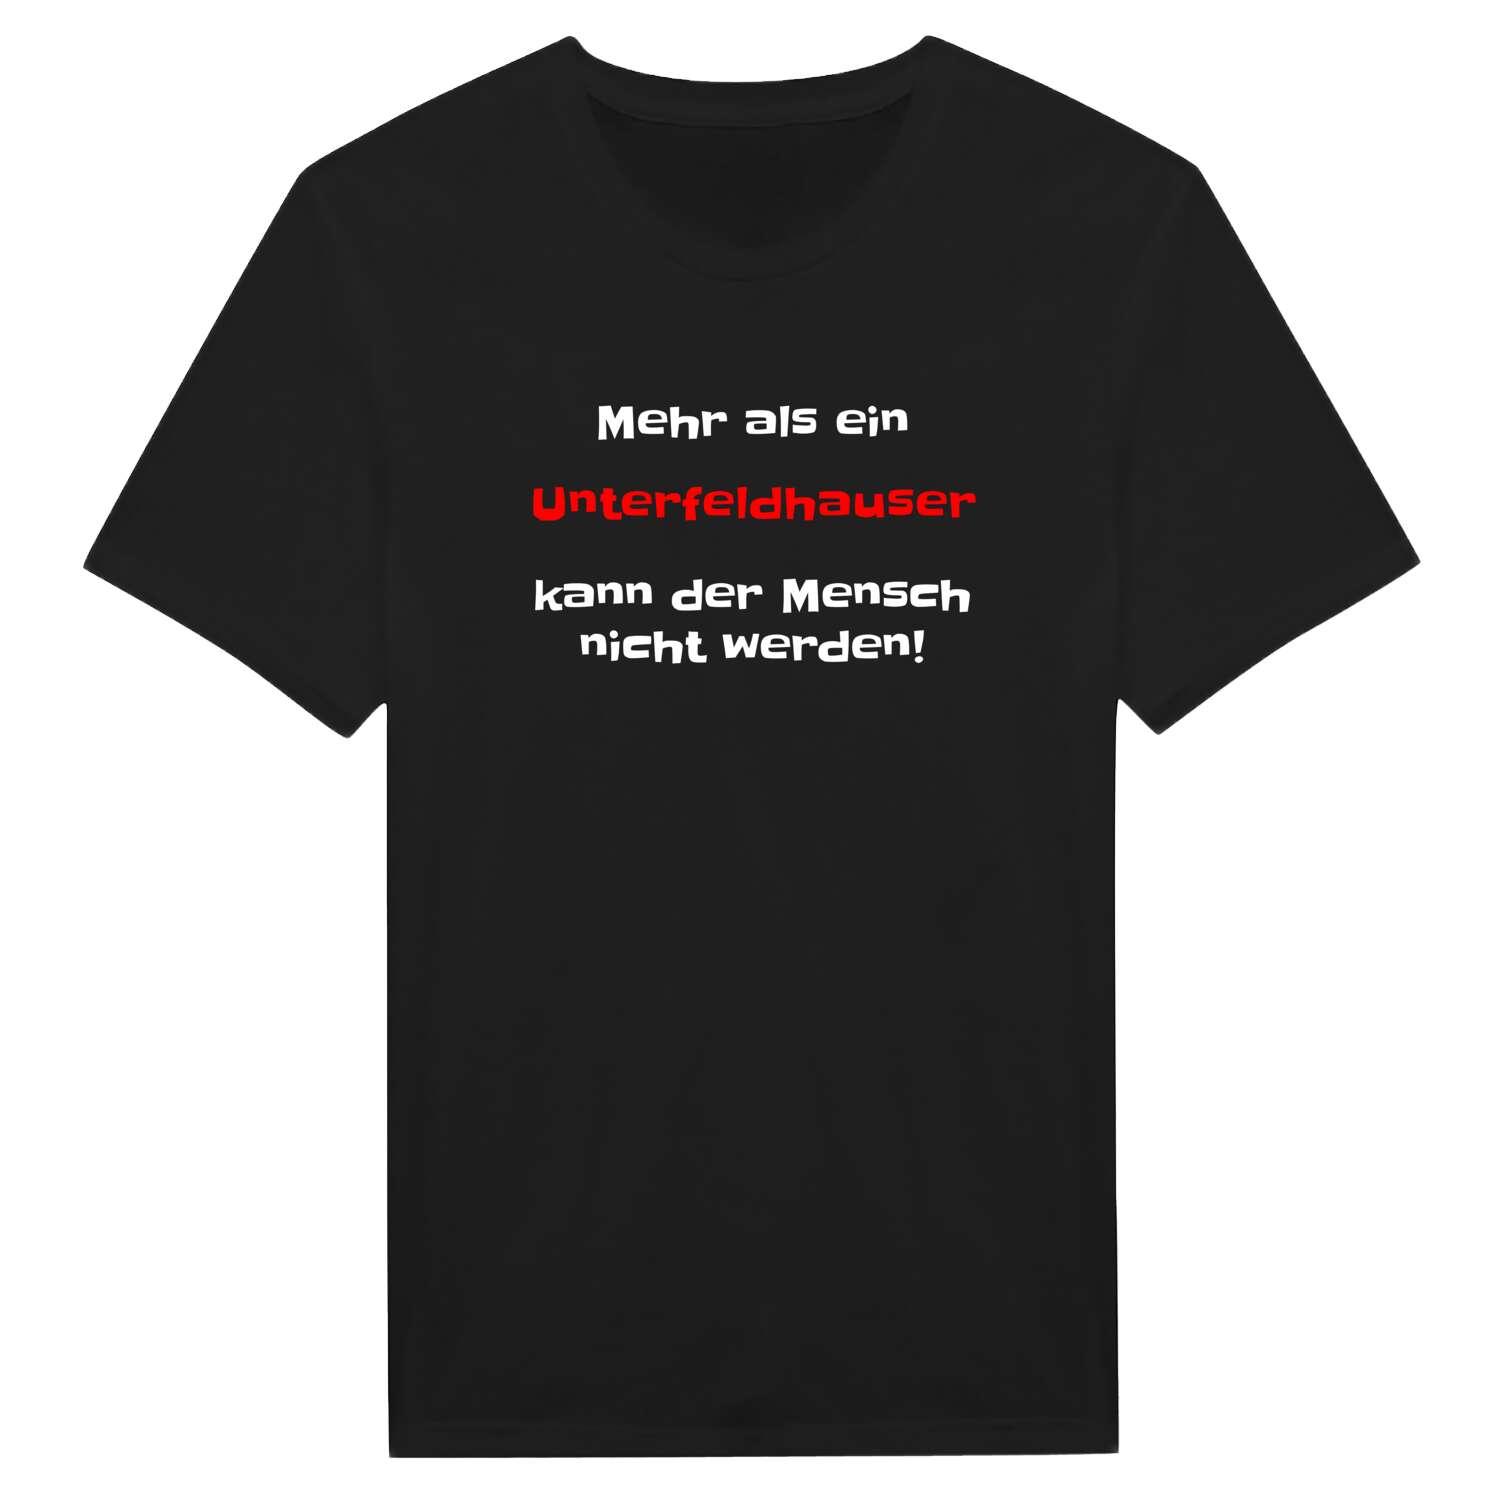 Unterfeldhaus T-Shirt »Mehr als ein«